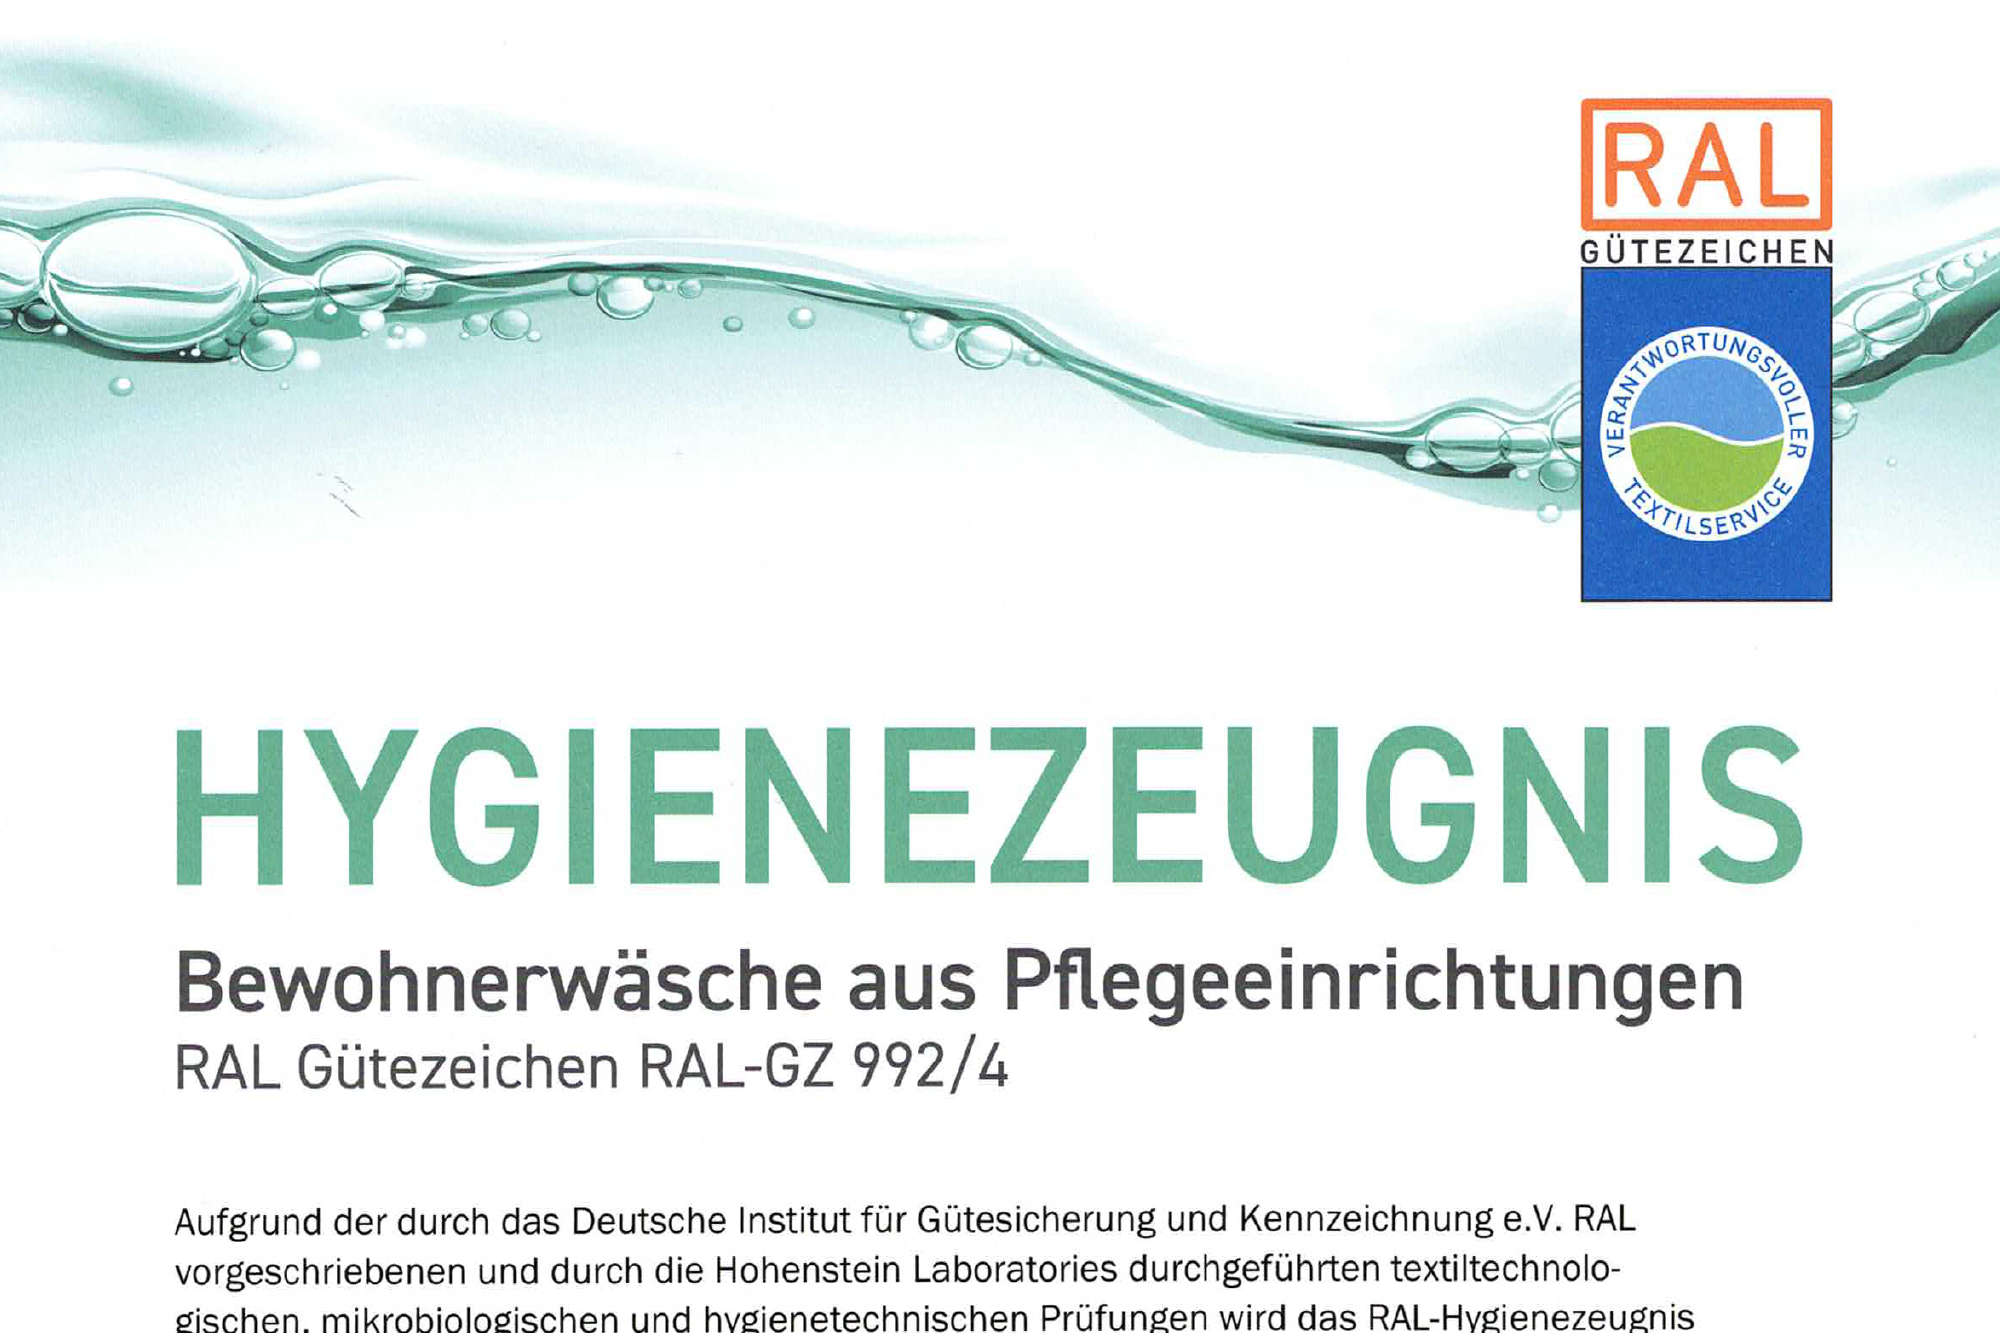 blog_klenk_A04-Hygienezeugnis-Bewohnerwäsche-Pflegeeinrichtungen-RAL-GZ-992-4-2022-01-2023